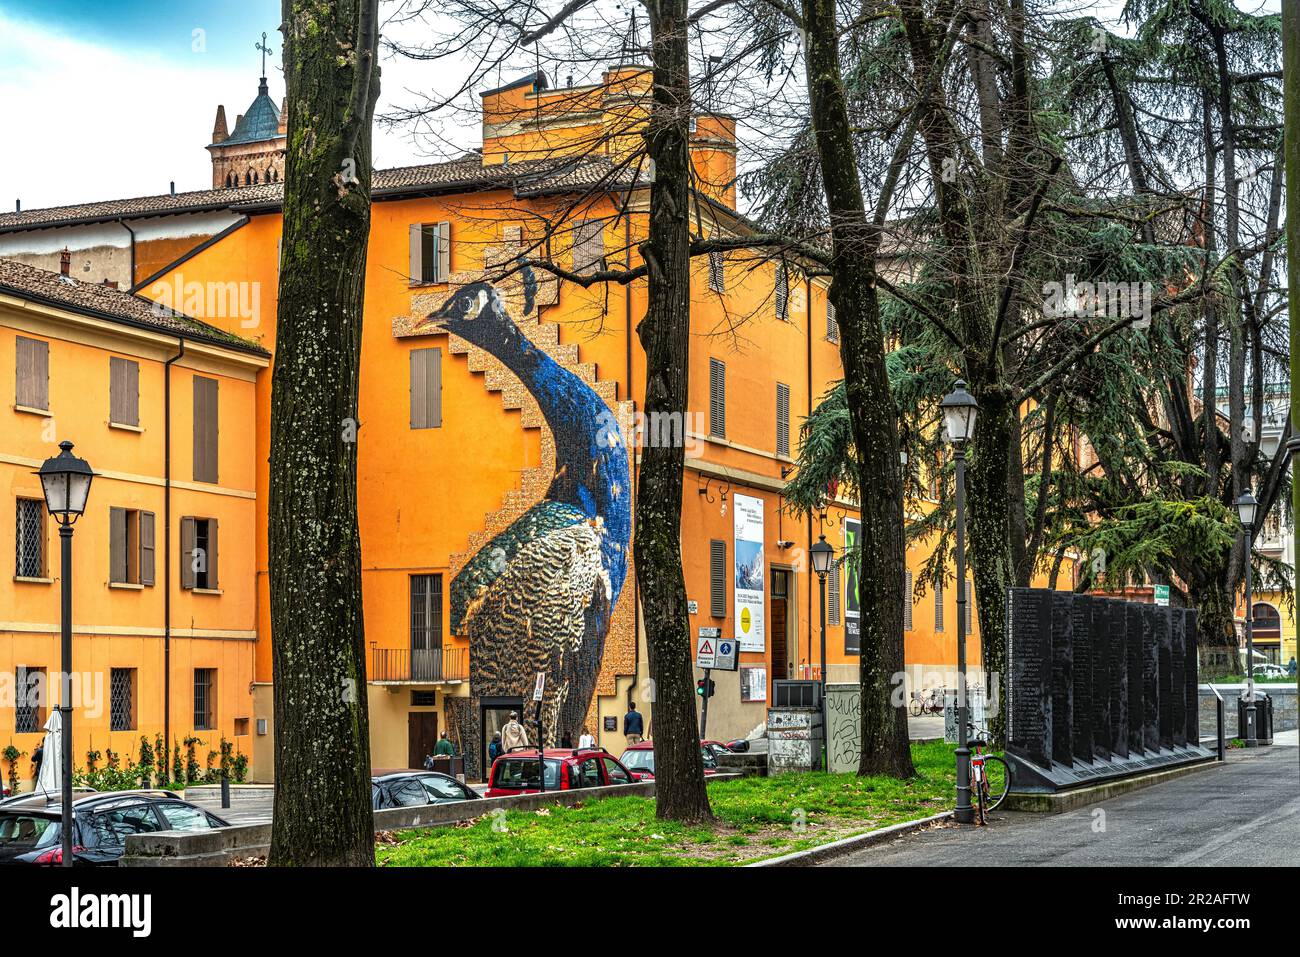 L'image d'un paon gigantesque créé à partir de milliers de petites photos de personnes de Reggio Emilia. Reggio Emilia, Emilie Romagne, Italie, Europe Banque D'Images